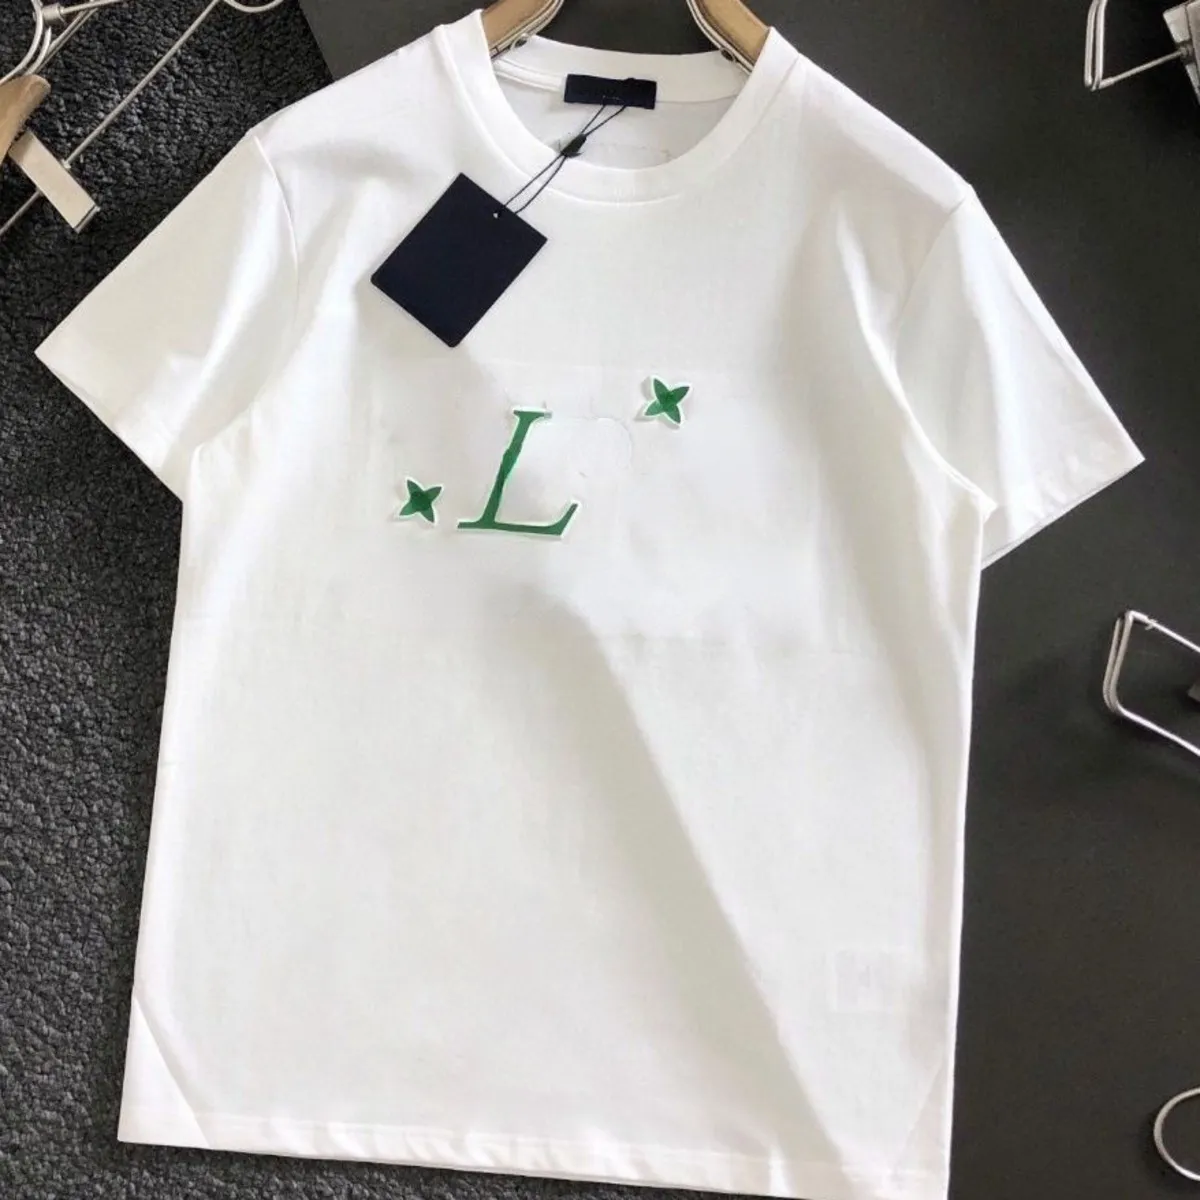 Sıcak satış Yüksek Versiyon Gelgit Marka L erkek t shirt Yaz Modası Üç Boyutlu Harf Baskı Yuvarlak Boyun Kısa Kollu Yüksek Kaliteli Erkek Kadın Giyim